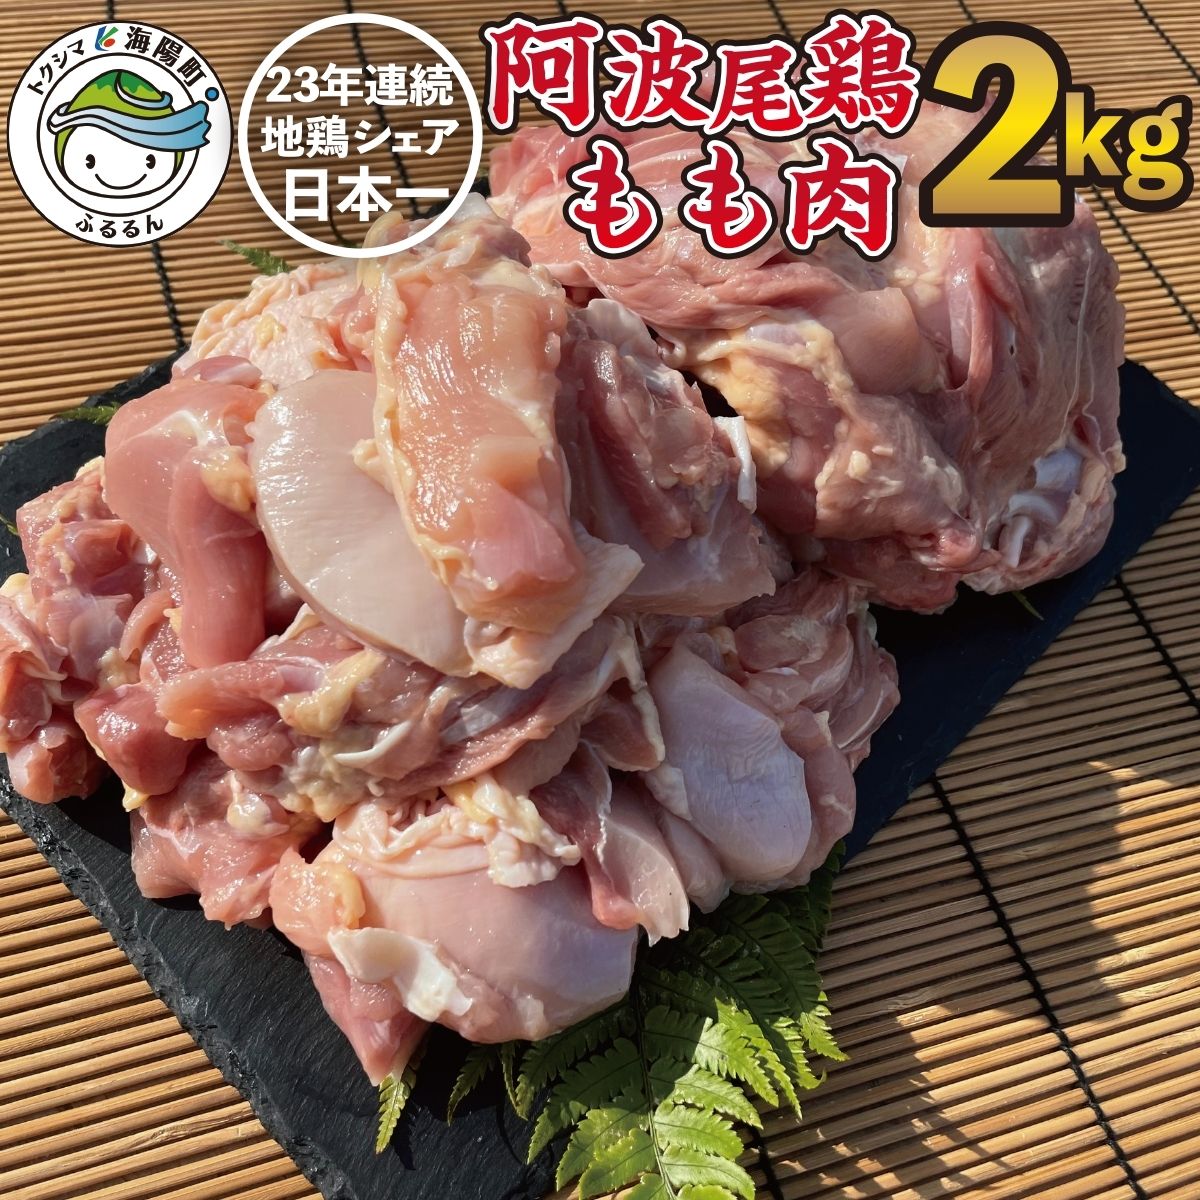 【ふるさと納税】 高級 地鶏 贅沢 阿波尾鶏 国産 日本一 鶏肉 鶏もも 合計約2kg 切り身 500g×2パック 正肉 500g×2パック 冷凍 鶏モモ 鶏モモ肉